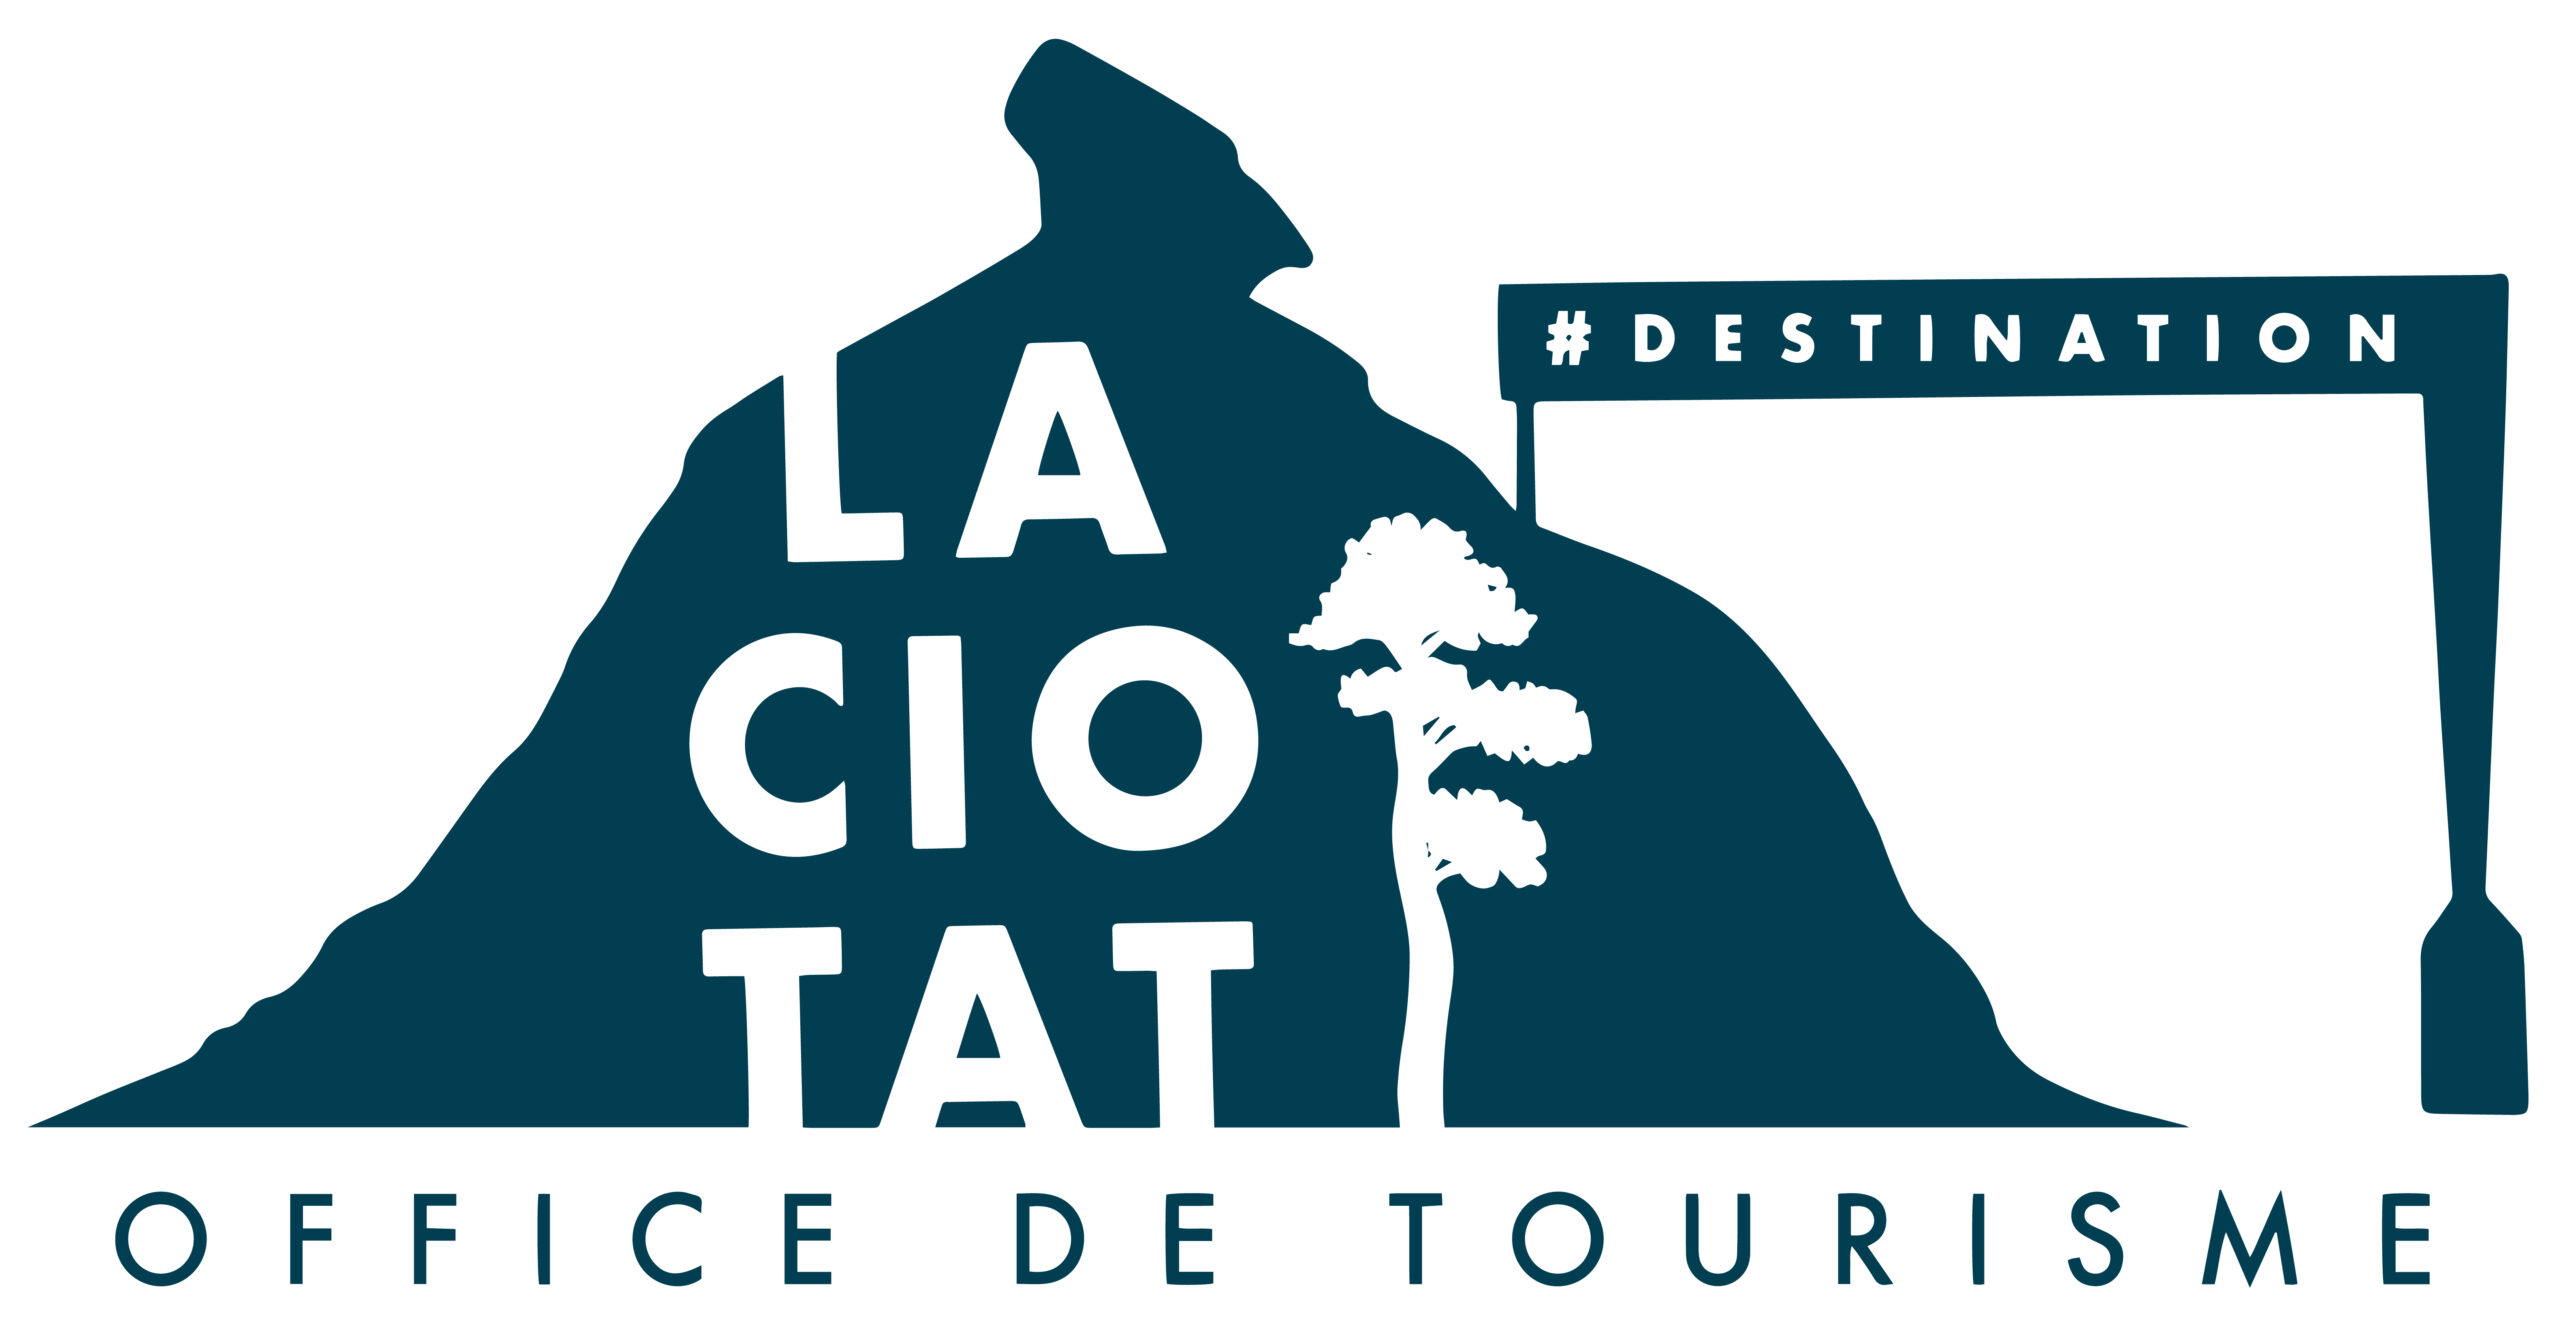 OFFICE DE TOURISME DE LA CIOTAT